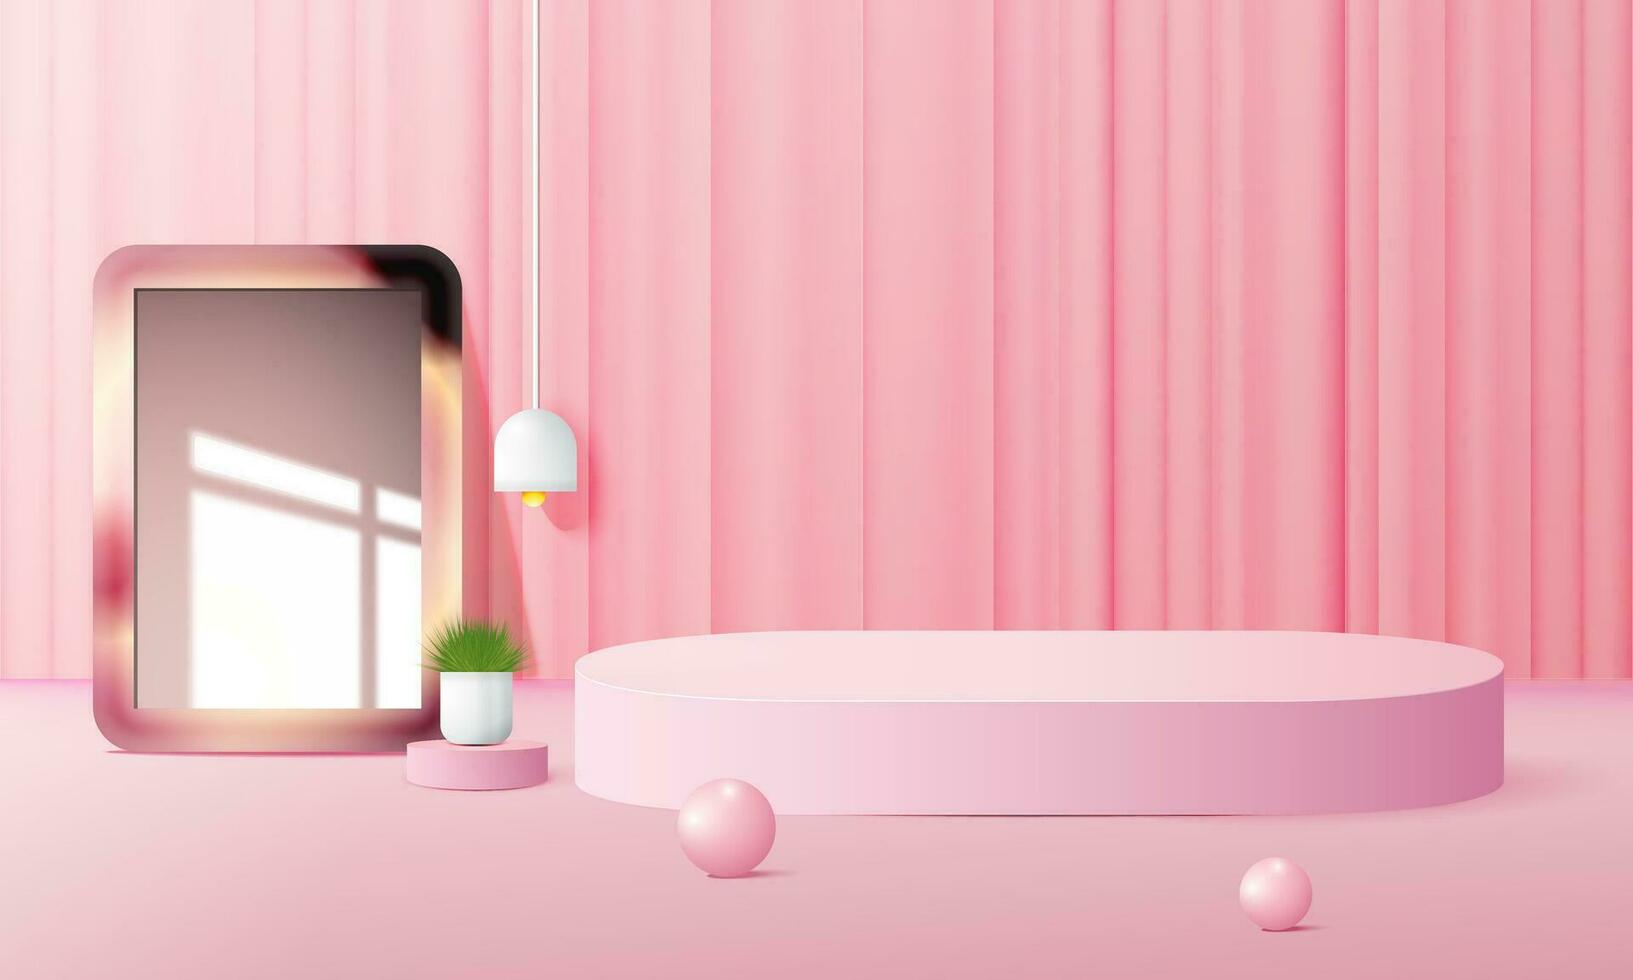 rosado podio escena antecedentes con fondo, para producto presentación, burlarse de arriba, espectáculo cosmético. vector